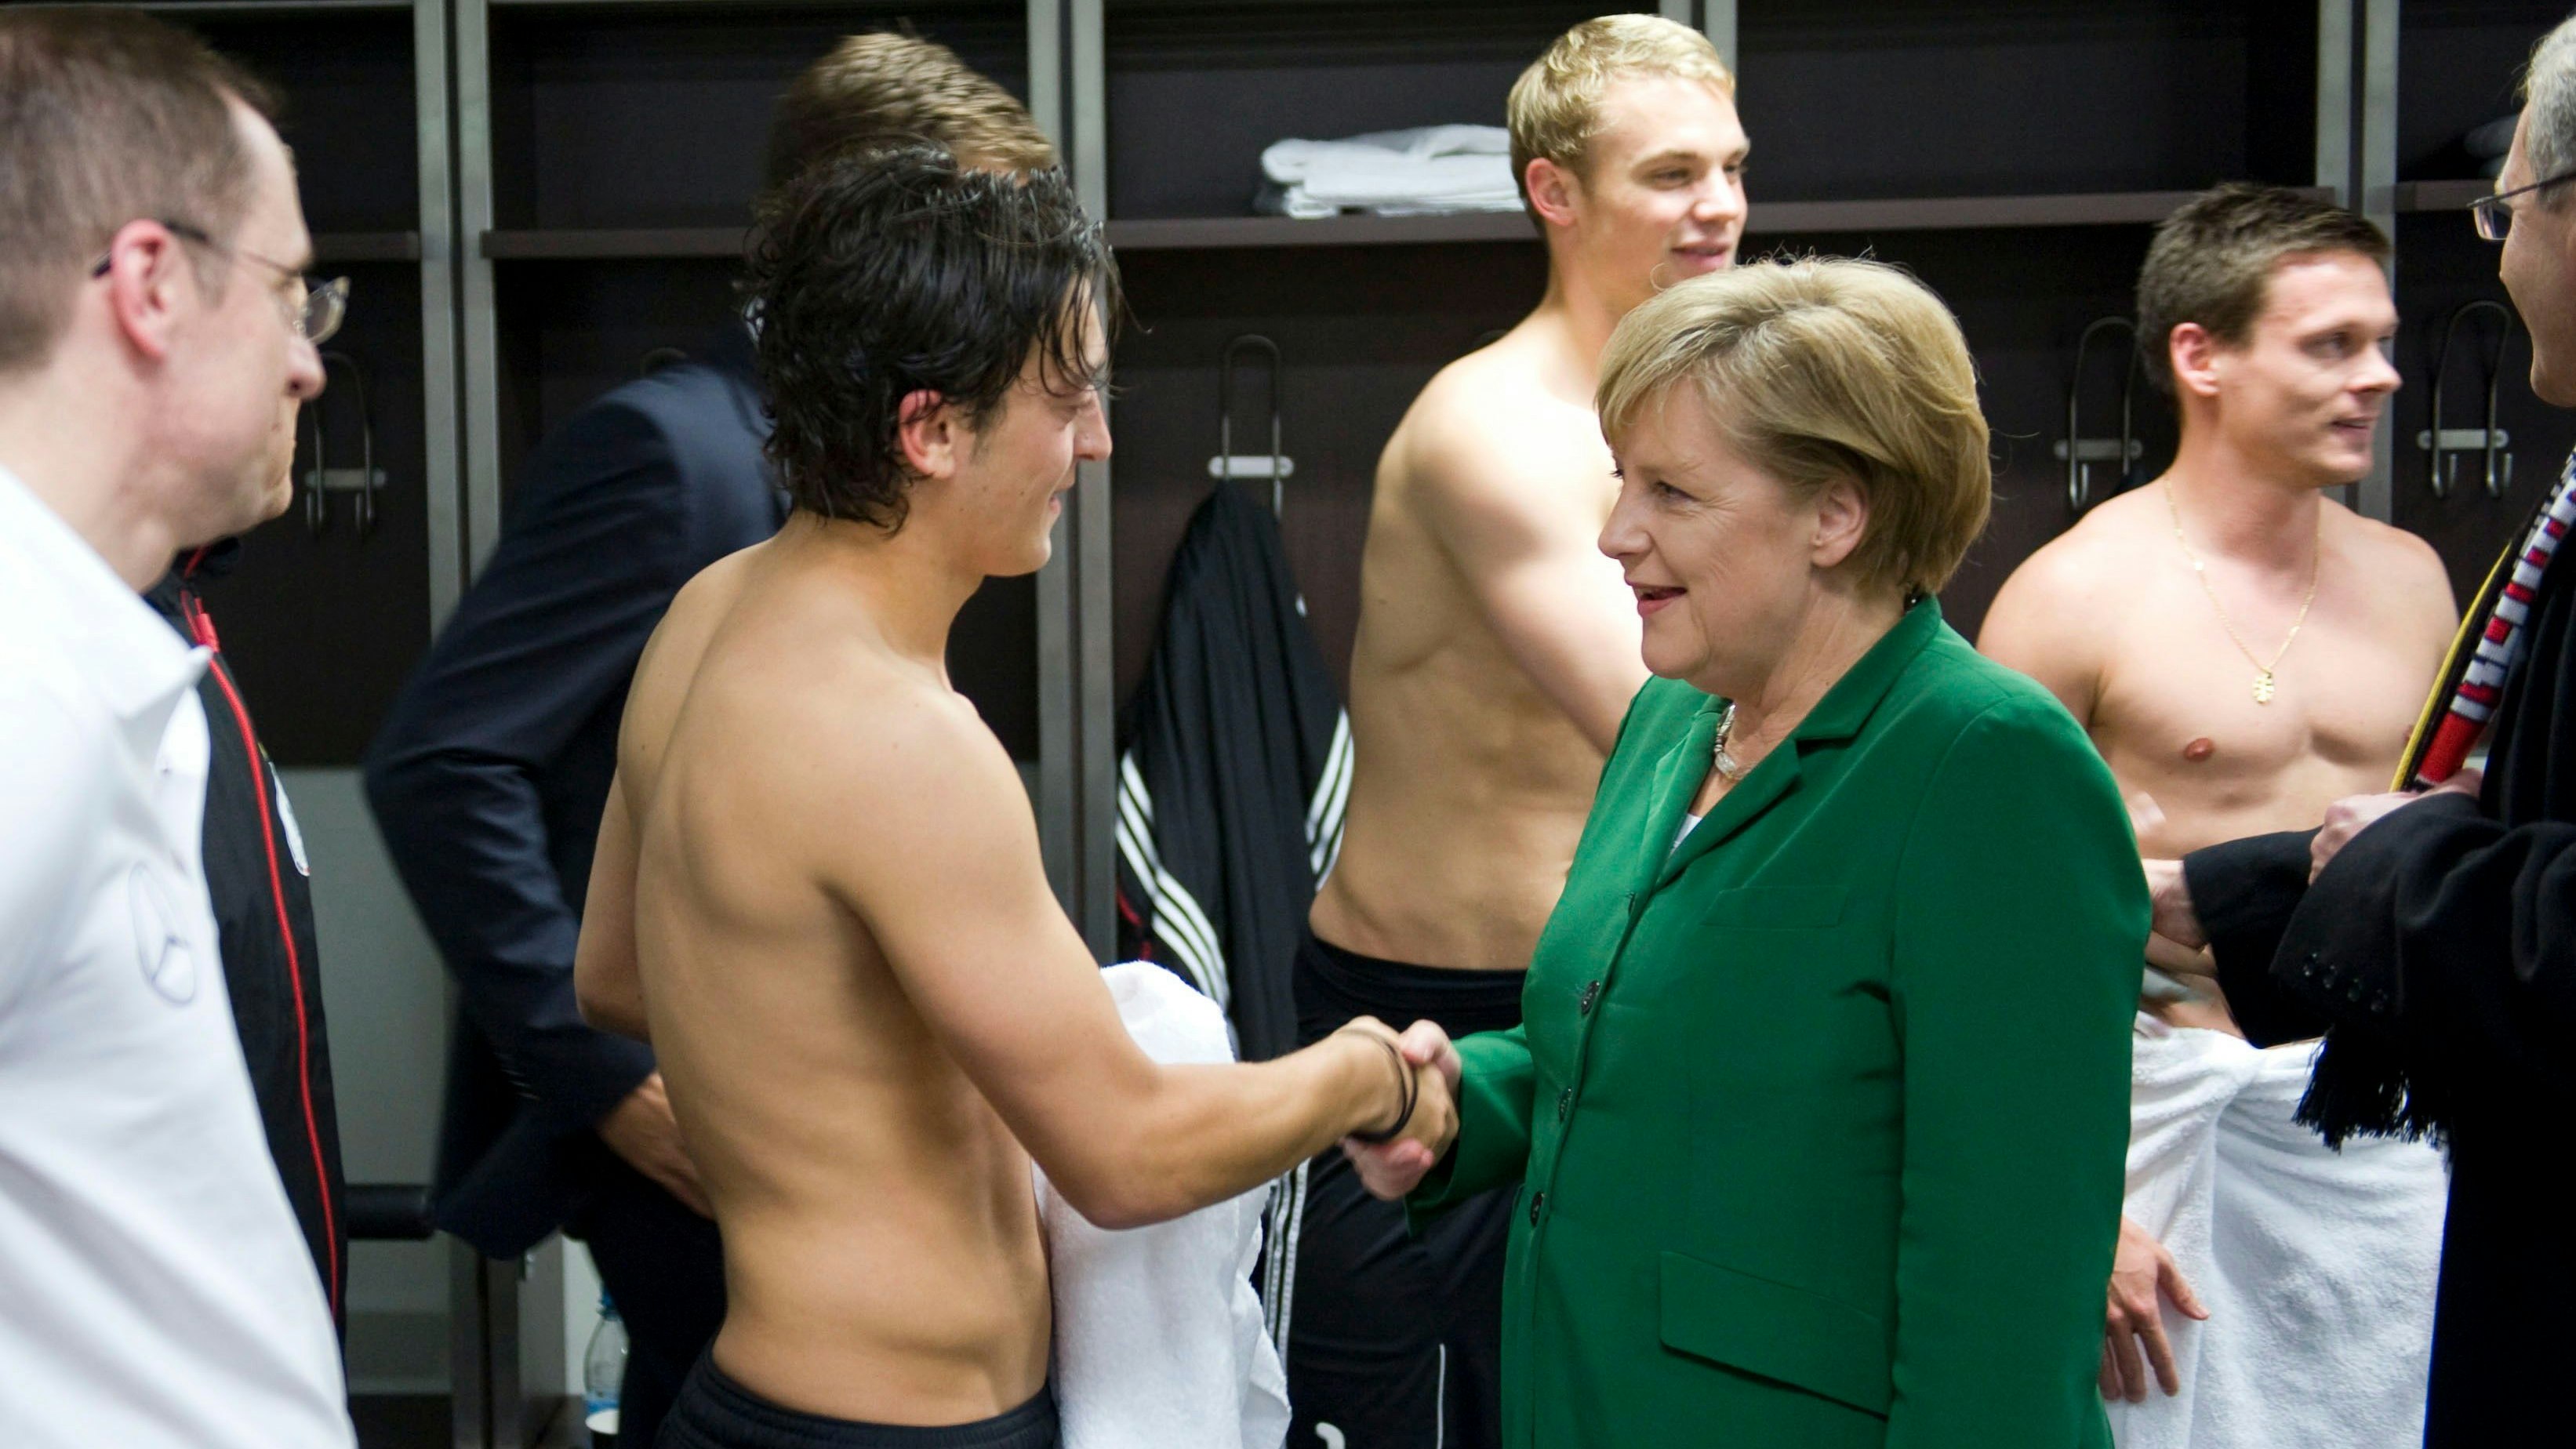 Kabinenpredigt von Mutti: Angela Merkel 2010 im Umkleideraum mit Nationalspieler Mesut Özil 